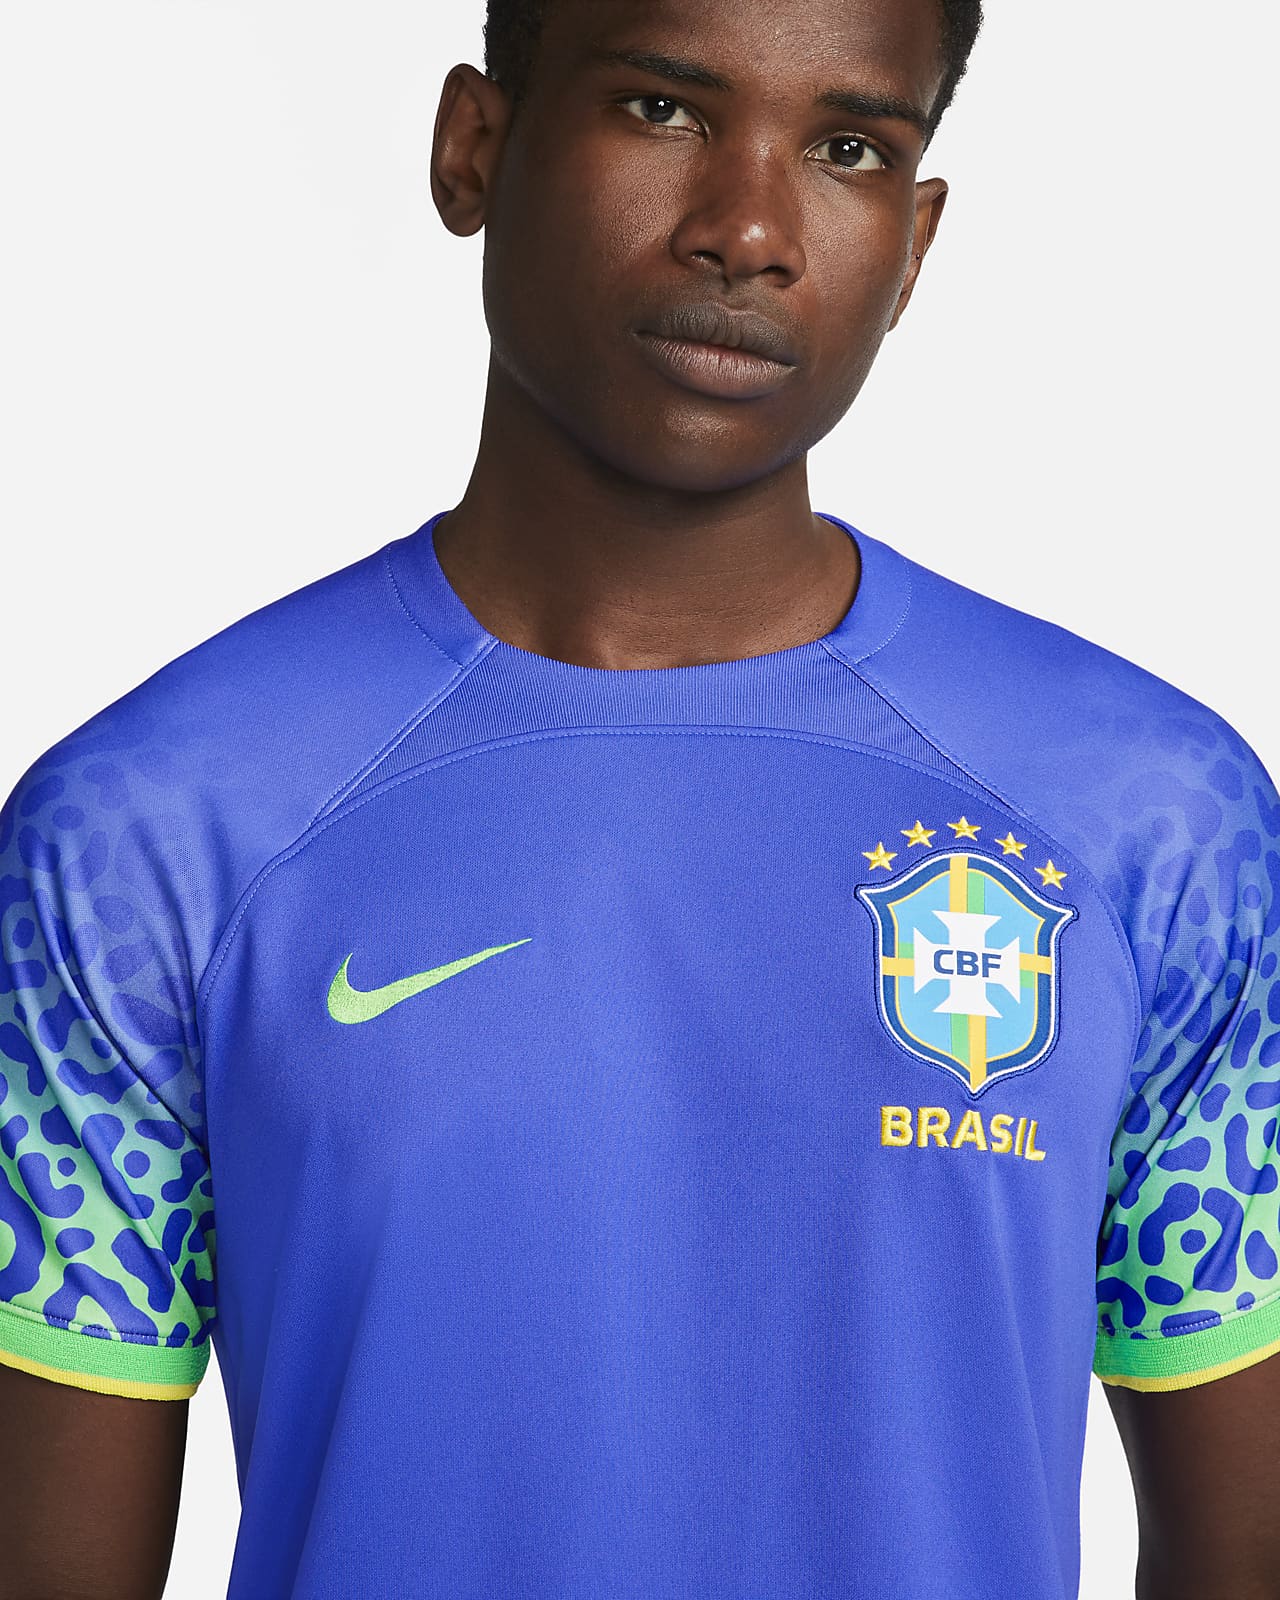 brazil soccer jersey zealand